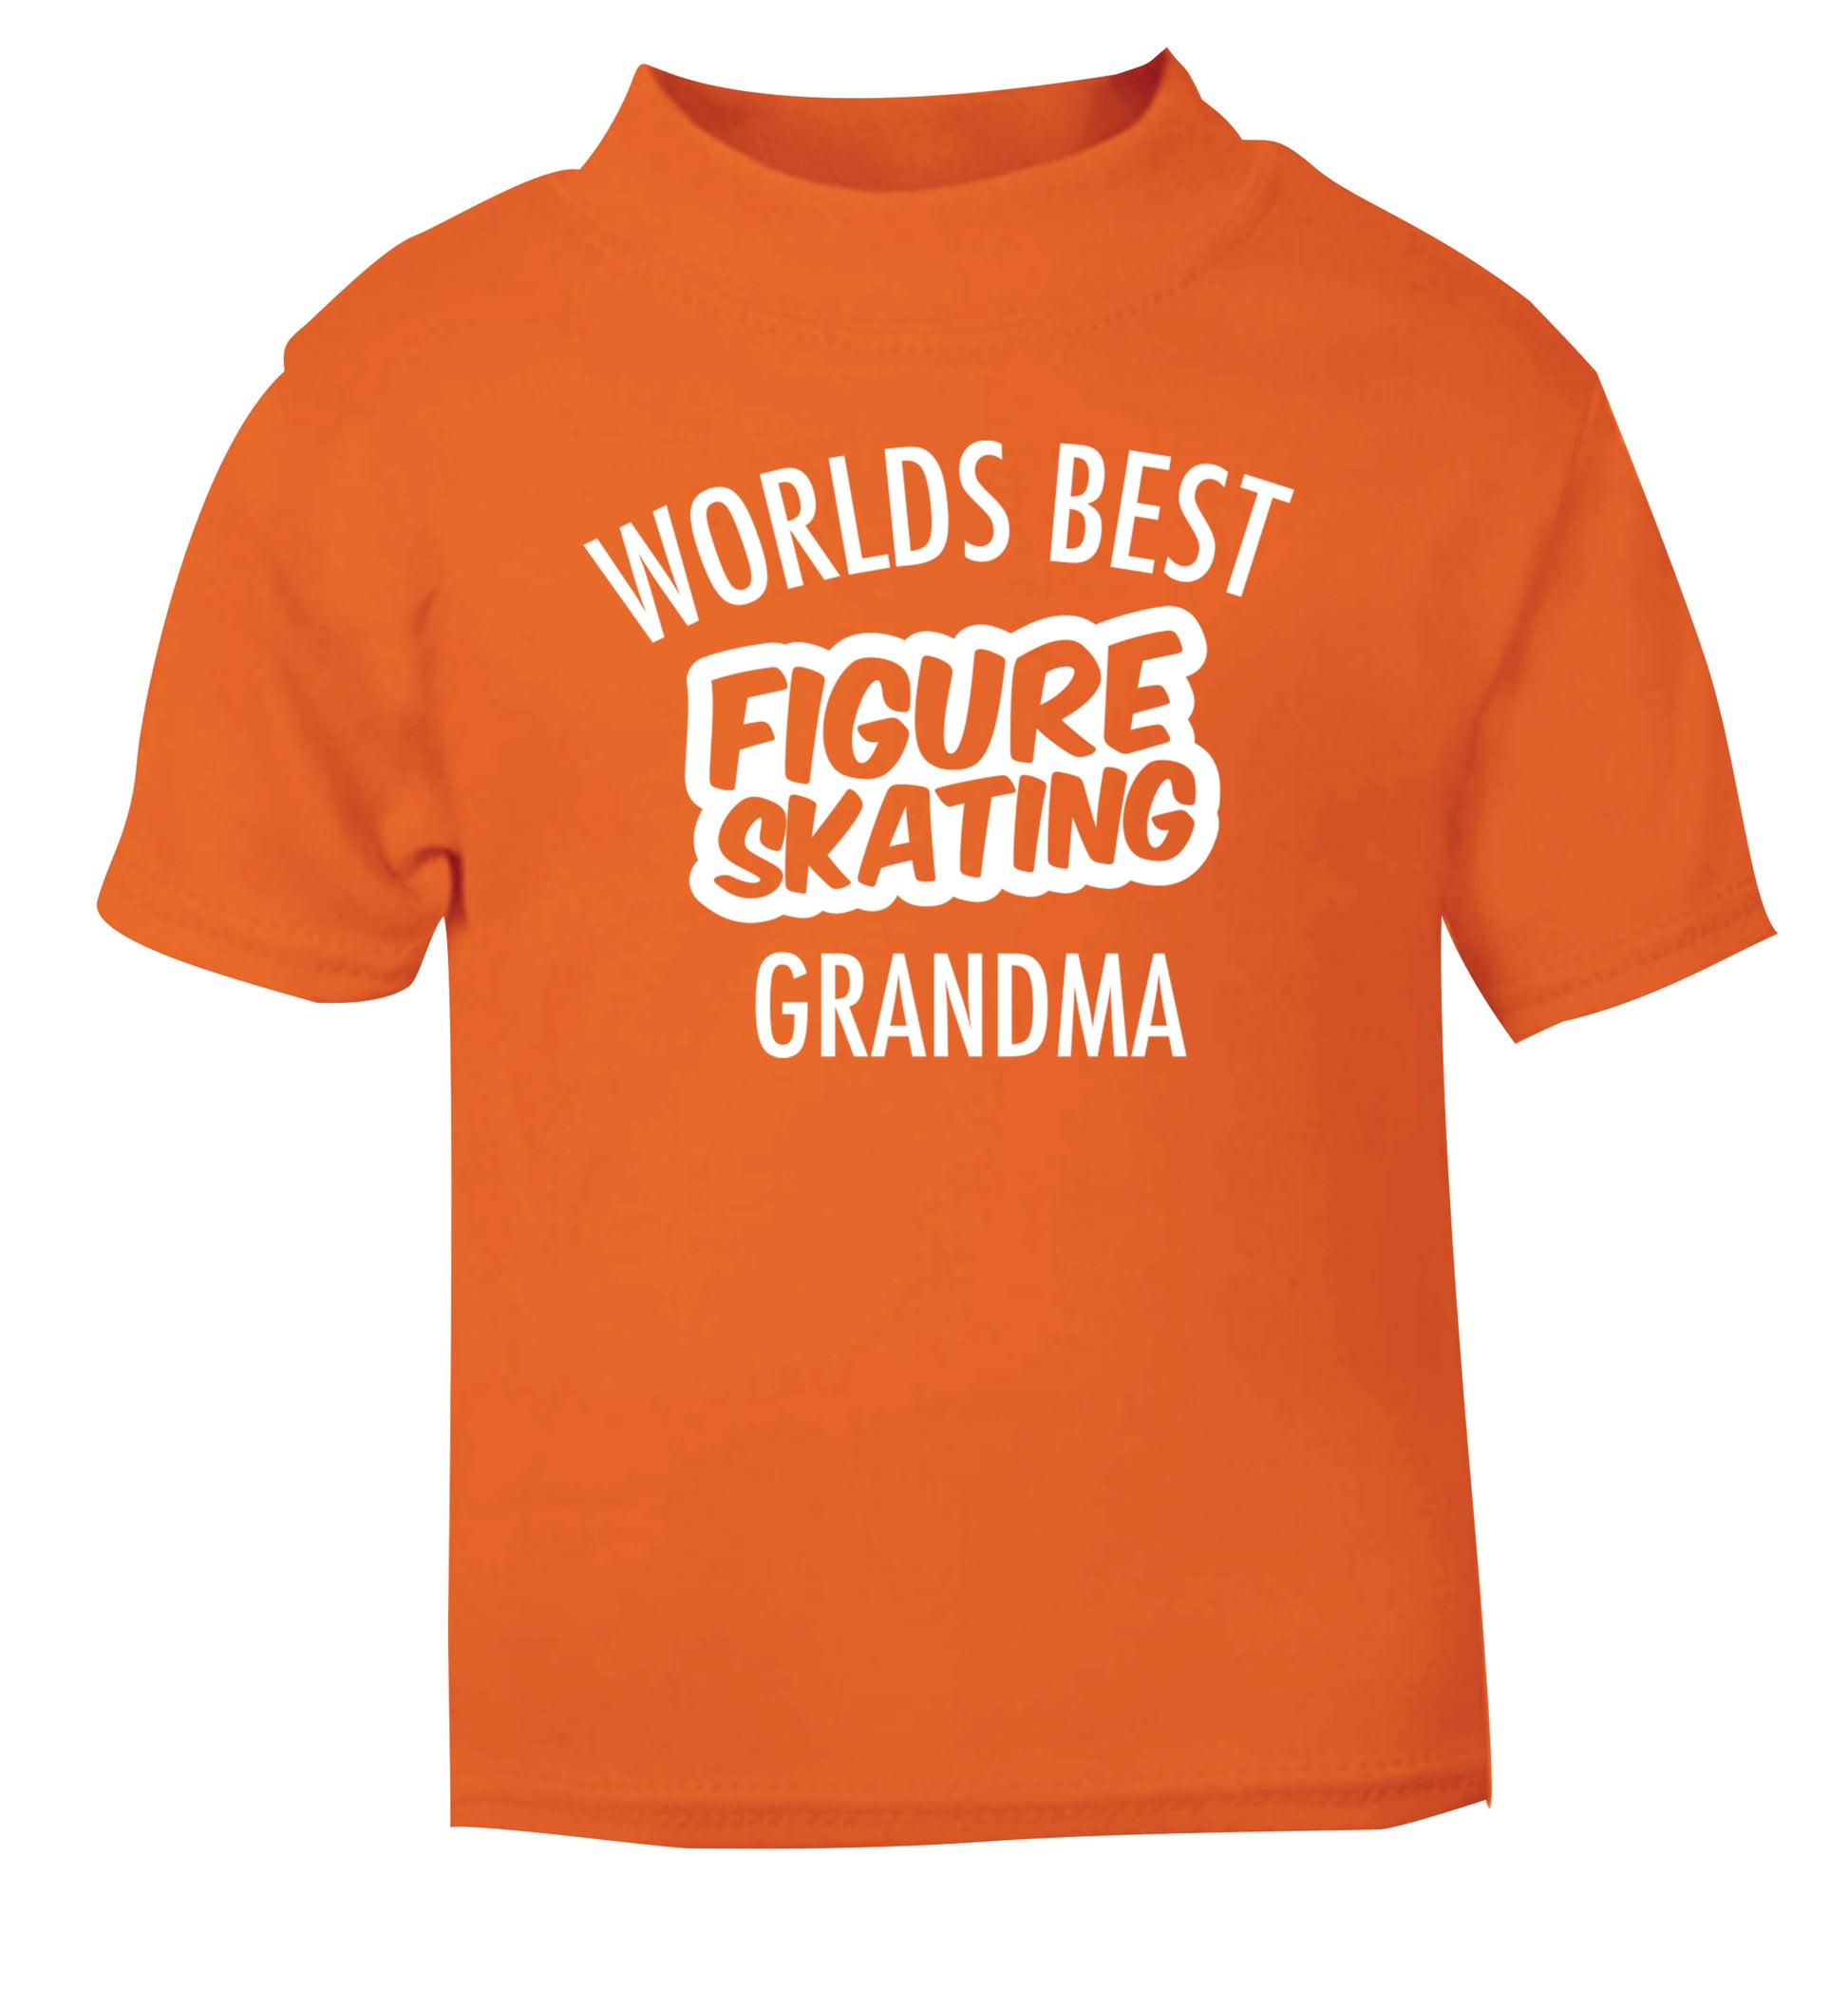 Worlds best figure skating grandma orange Baby Toddler Tshirt 2 Years